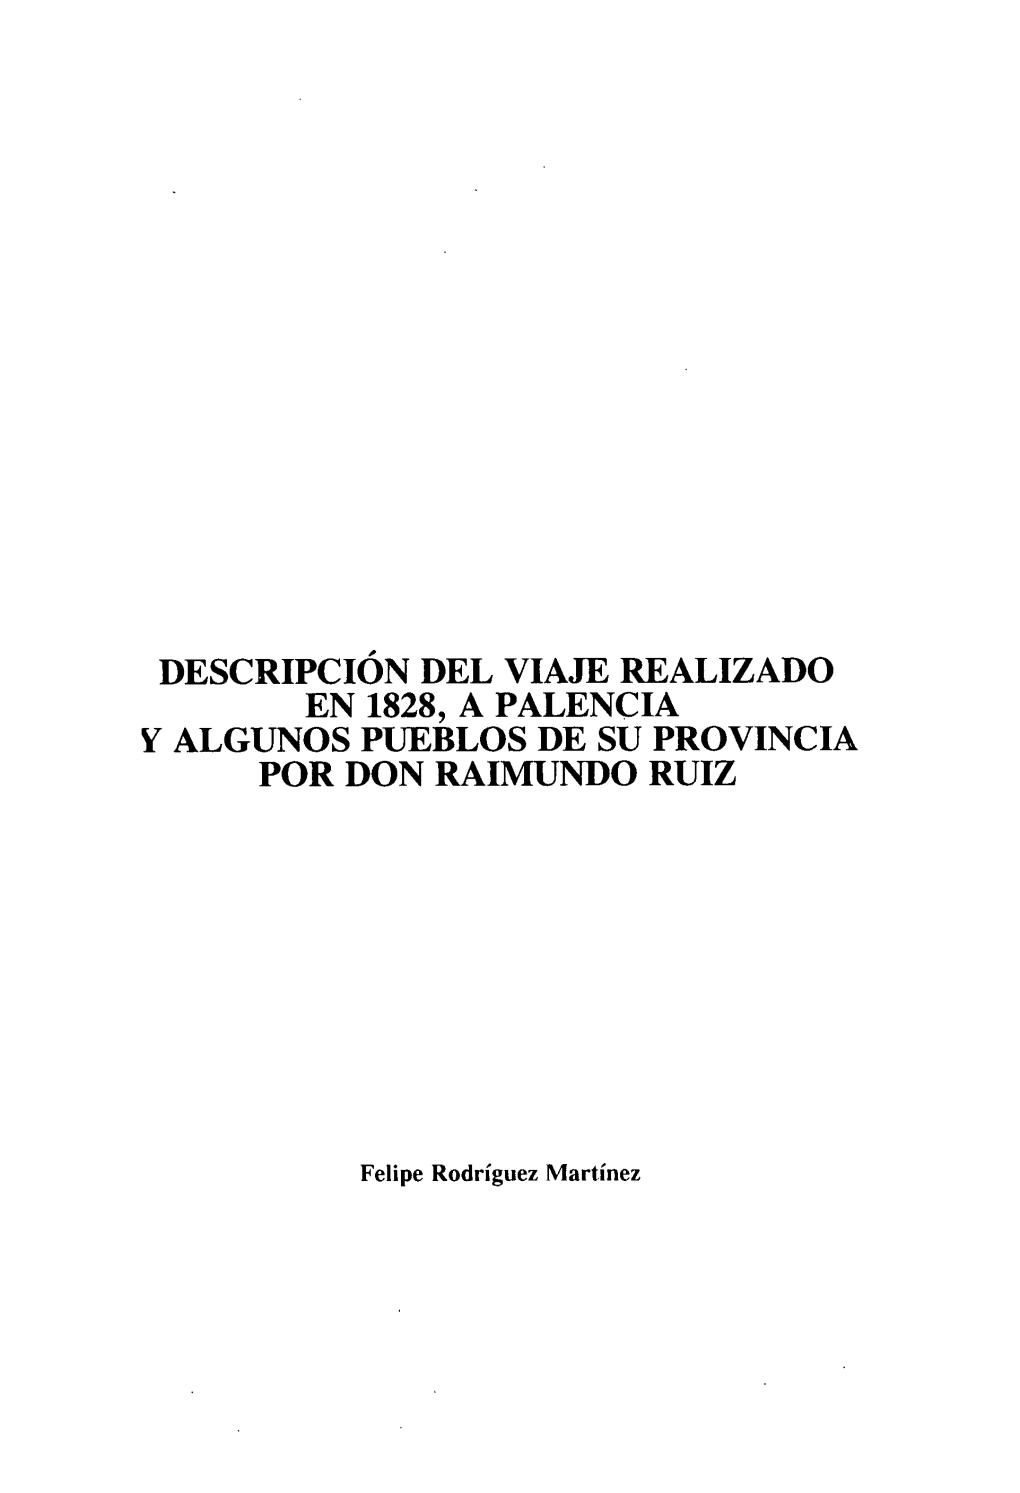 Descripción Del Viaje Realizado En 1828, a Palencia Y Algunos Pueblos De Su Provincia Por Don Raimundo Ruiz